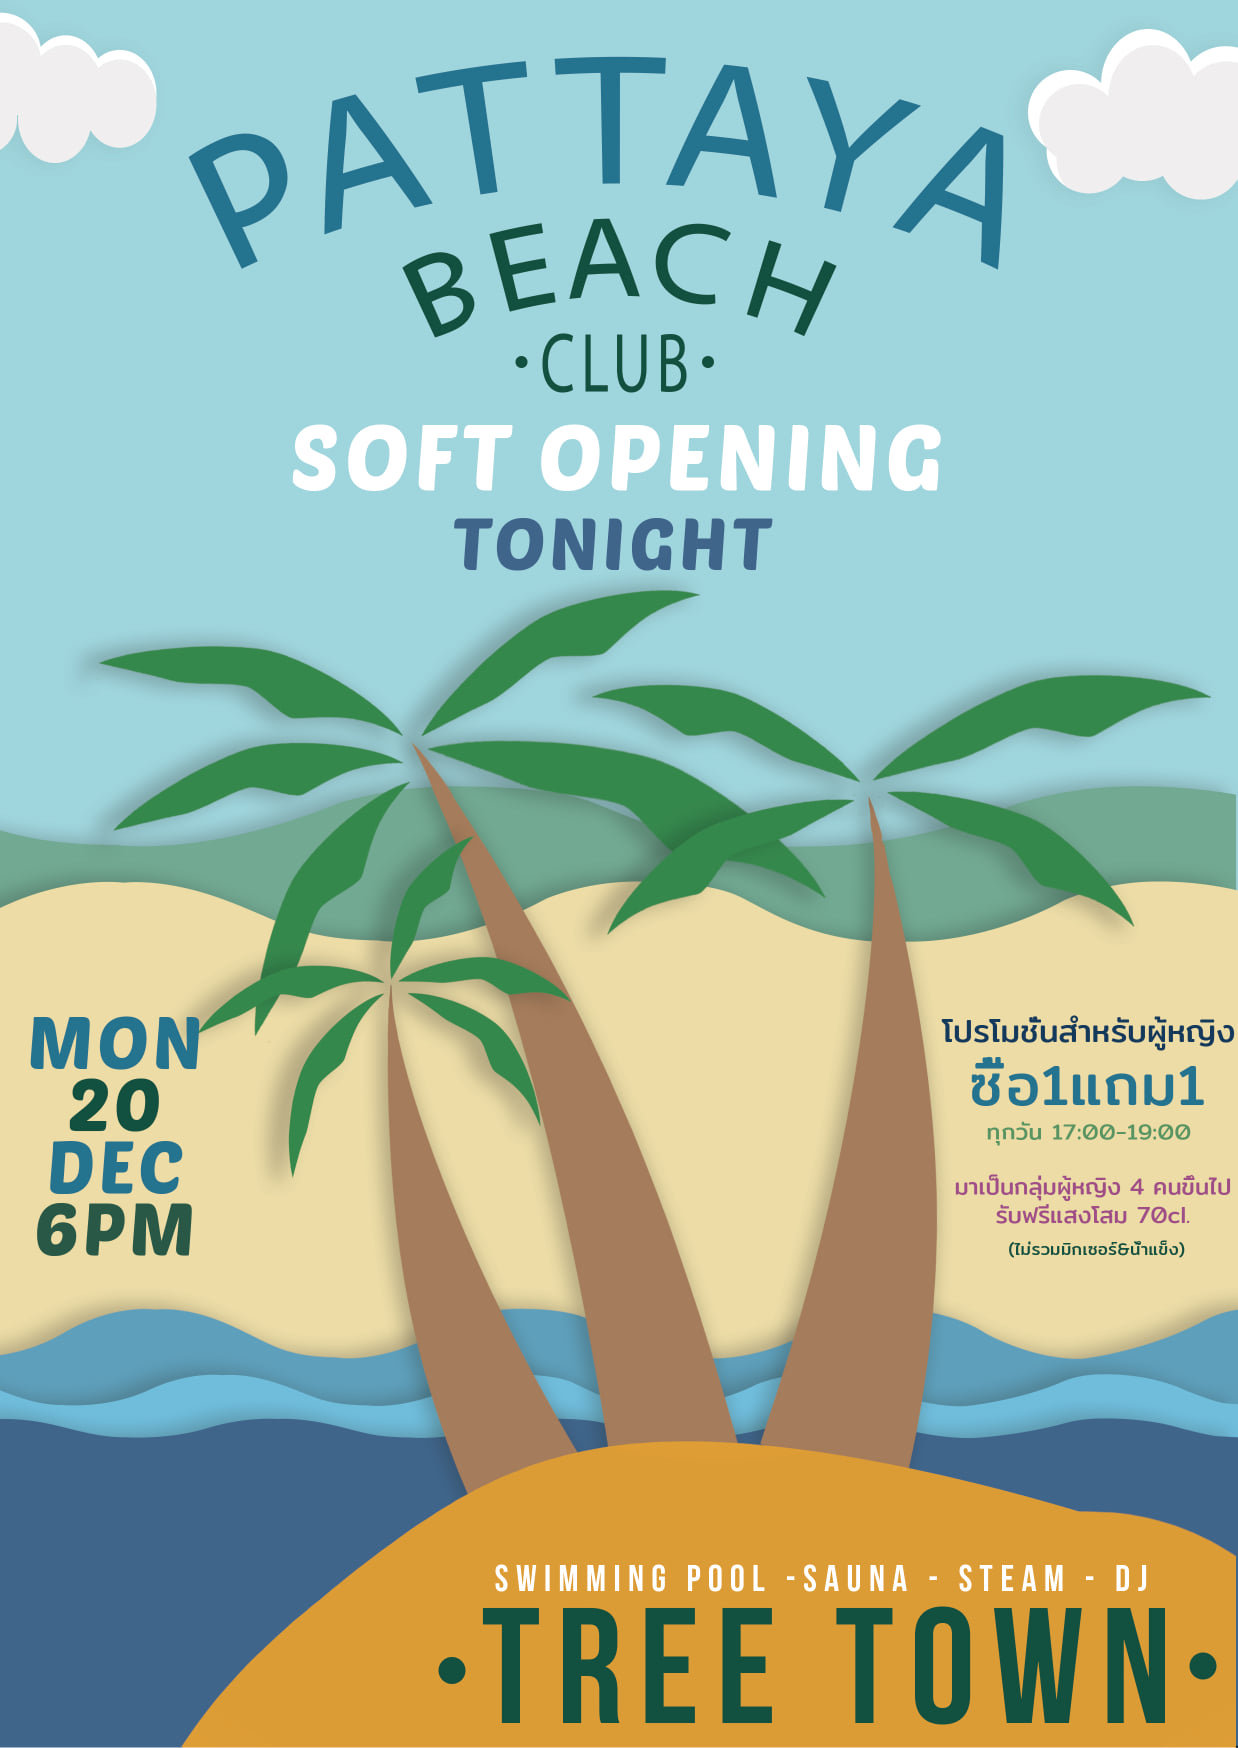 Pattaya Beach Club Flyer by JD Design